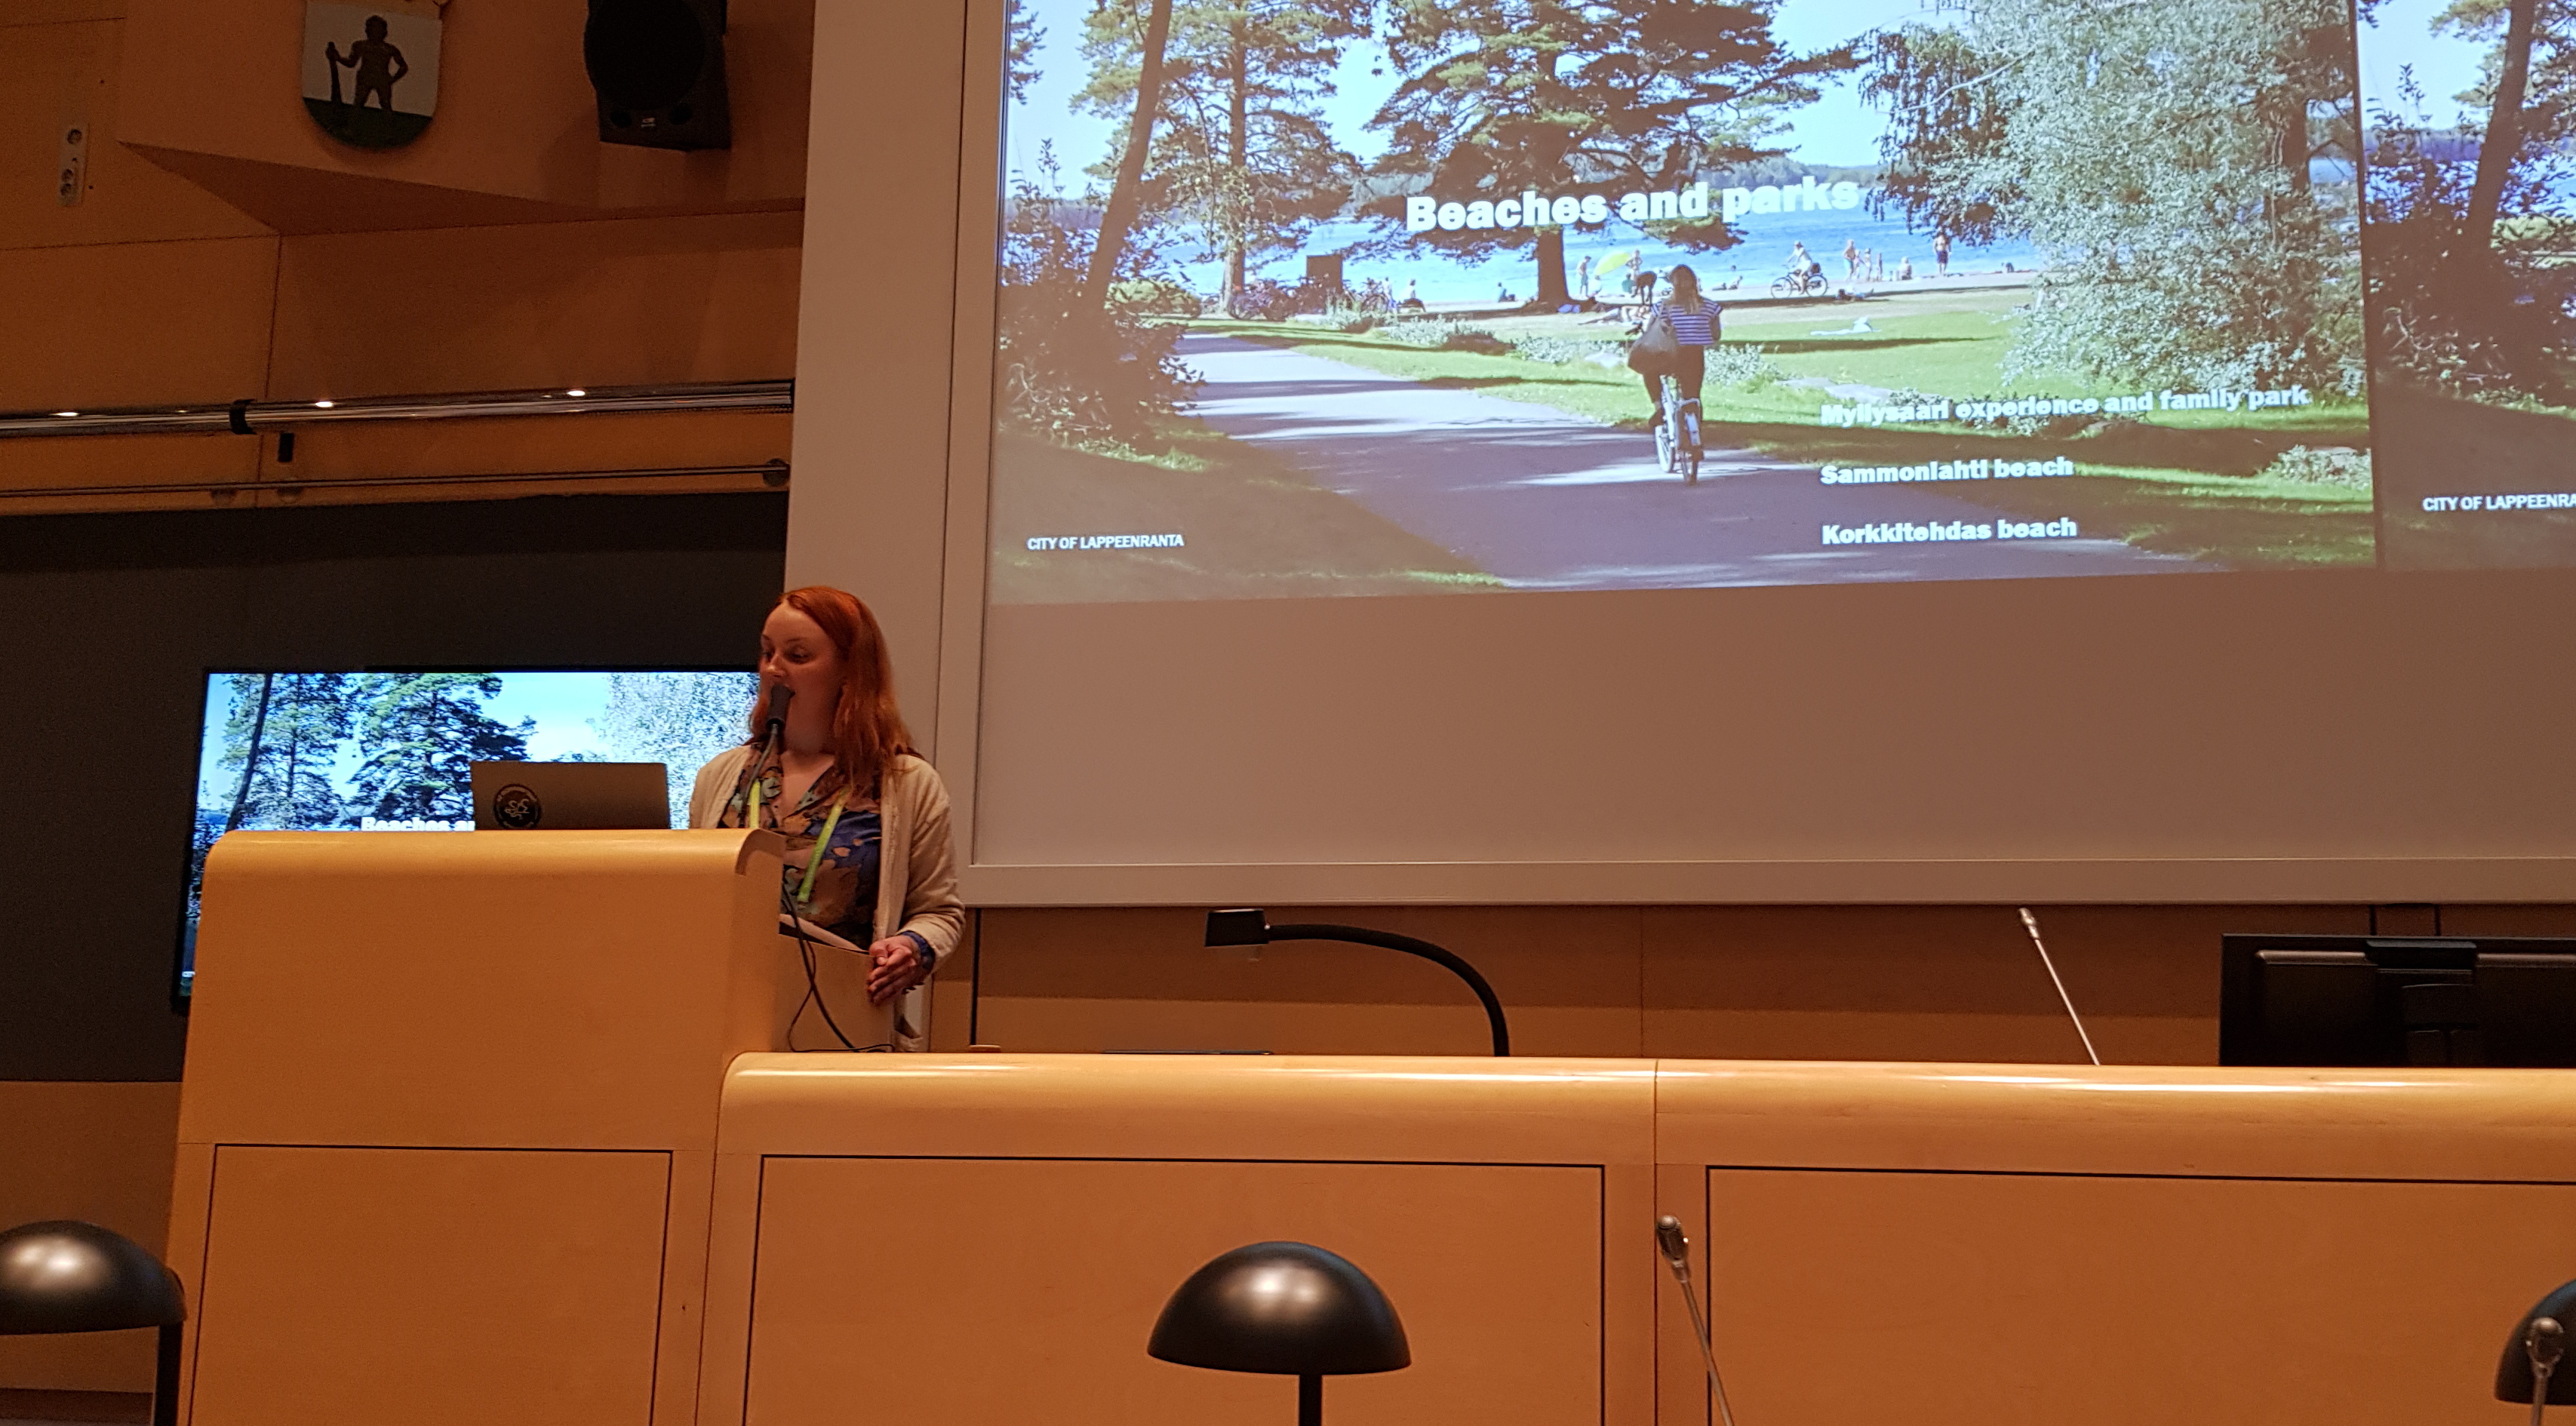 Kuvassa on Anita Pölönen puhumassa puhujapöntöllä ja vieressä näkyy puheenjohtajien pöytää.  Taustalla oikealla näkyy iso näyttö ja kesäistä puistomaisemaa, jossa kulkee kävelytie.  Taustalla puiden takaa näkyy sinistä järveä.  Vasemmalla näkyy osa pienestä näytöstä.